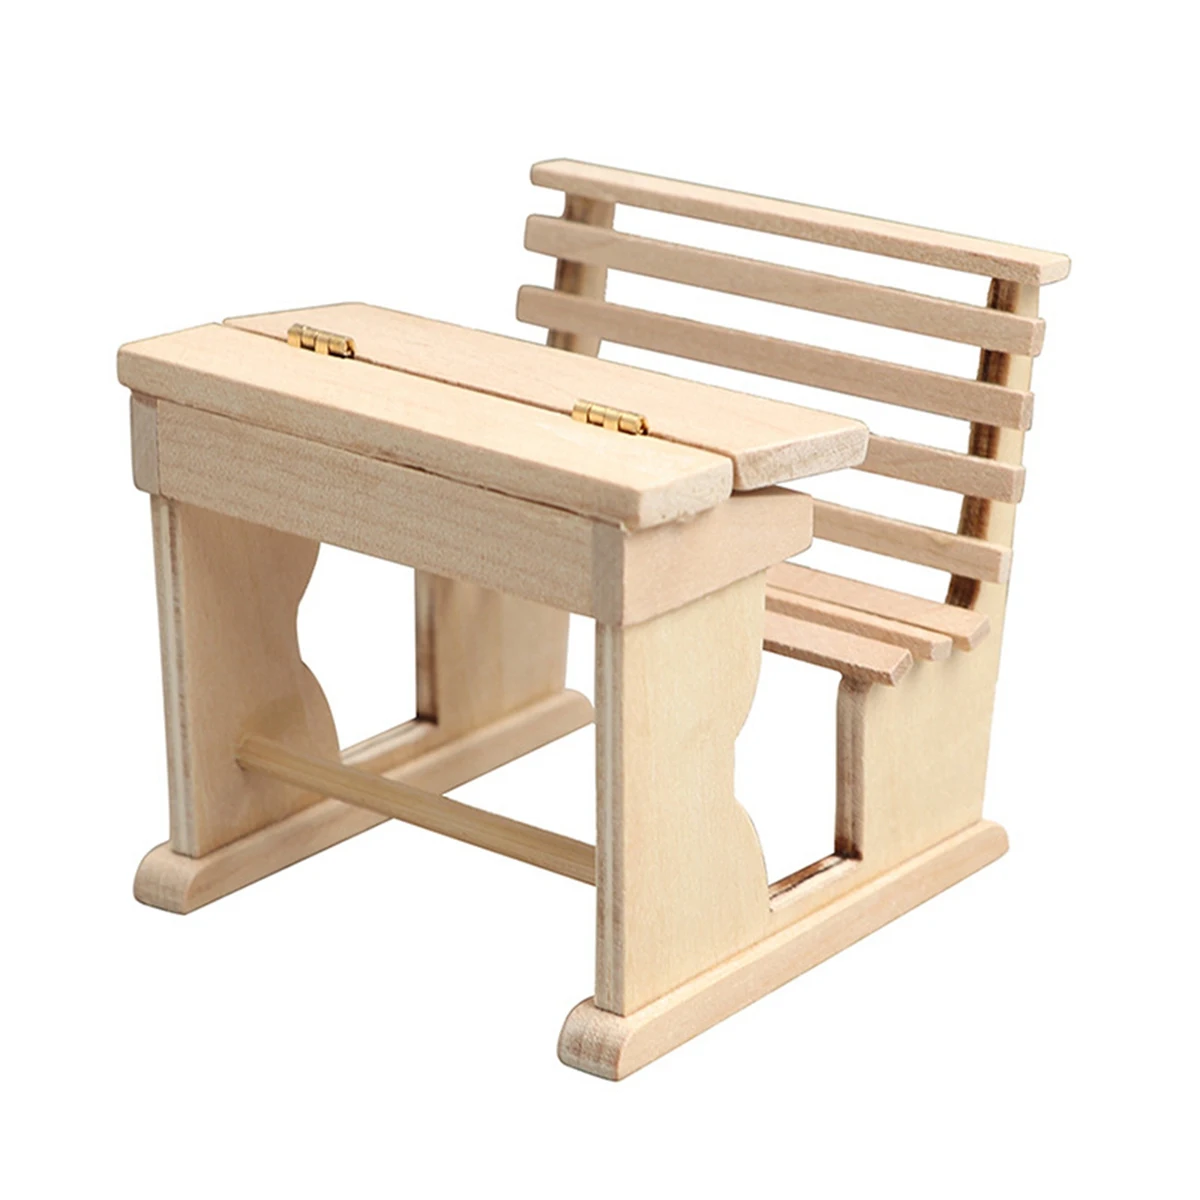 

Деревянный стол для письма 1/12, детская мебель для школы, модель игрушечного декора, аксессуары